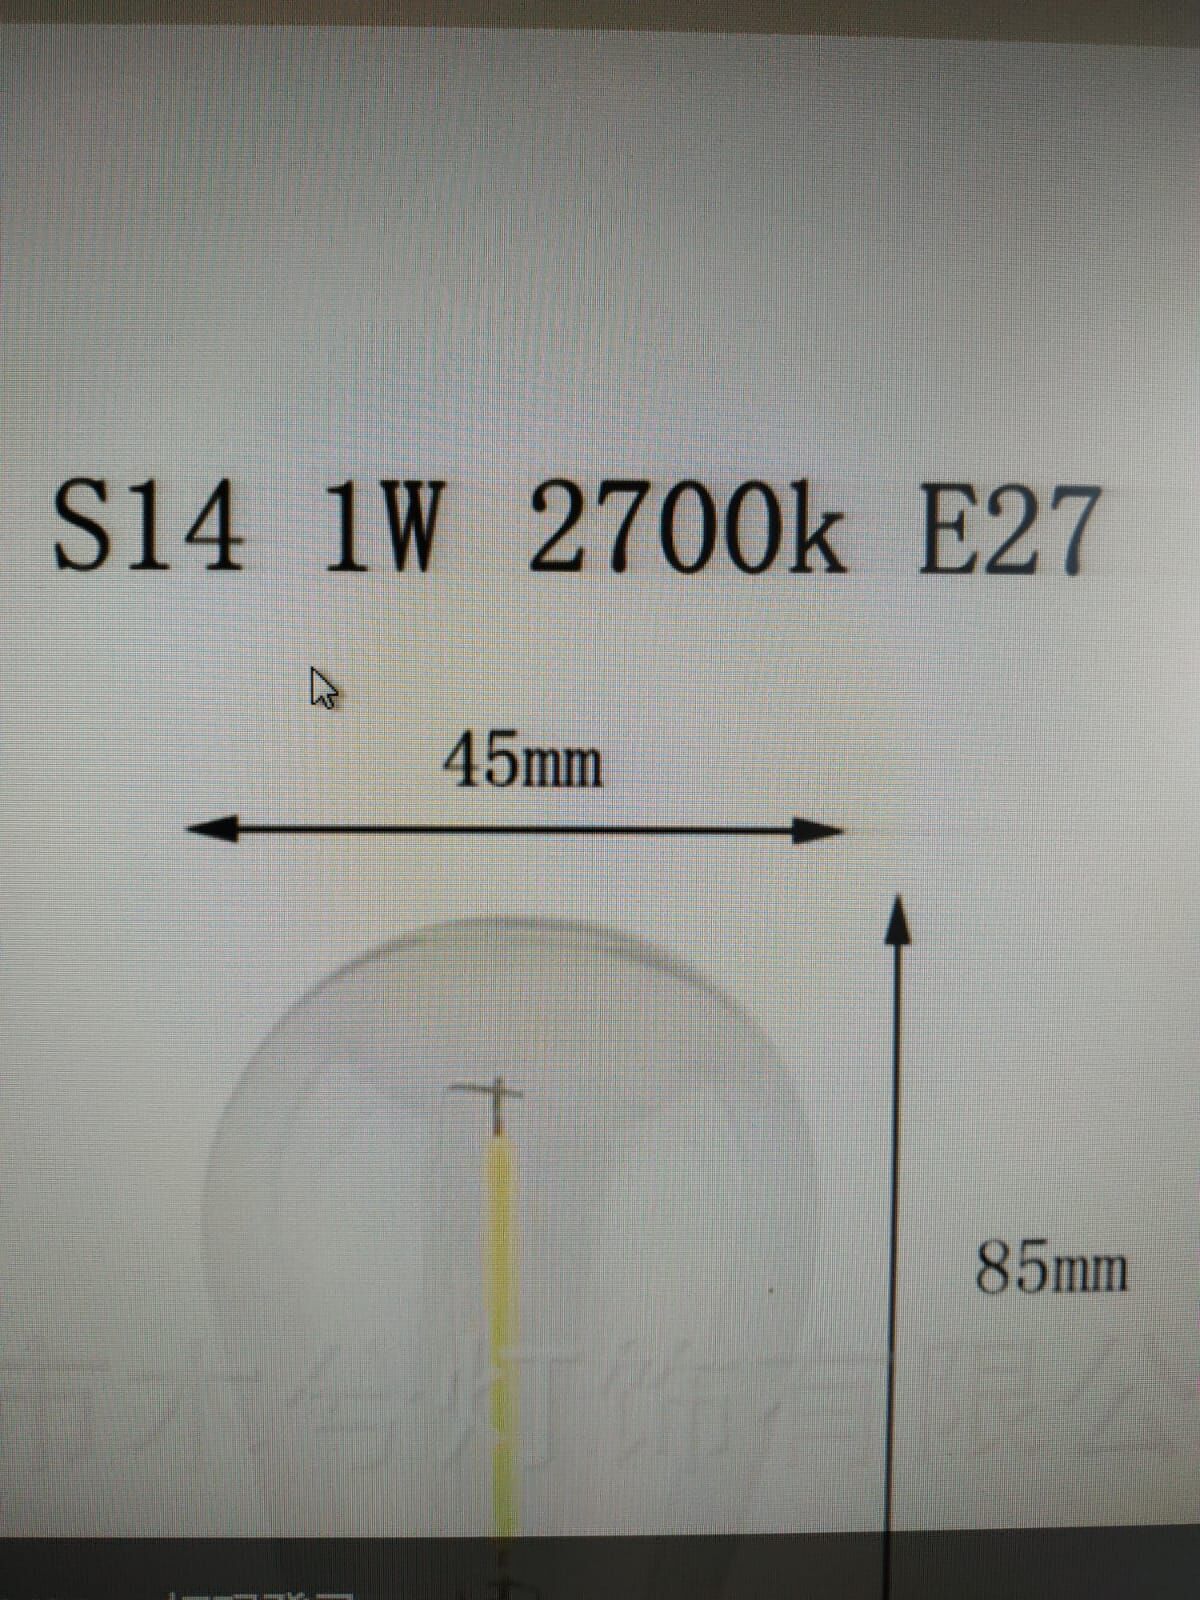 Светодиодная лампочка для РЕТРО гирлянды Е27, тёплое свечение 5